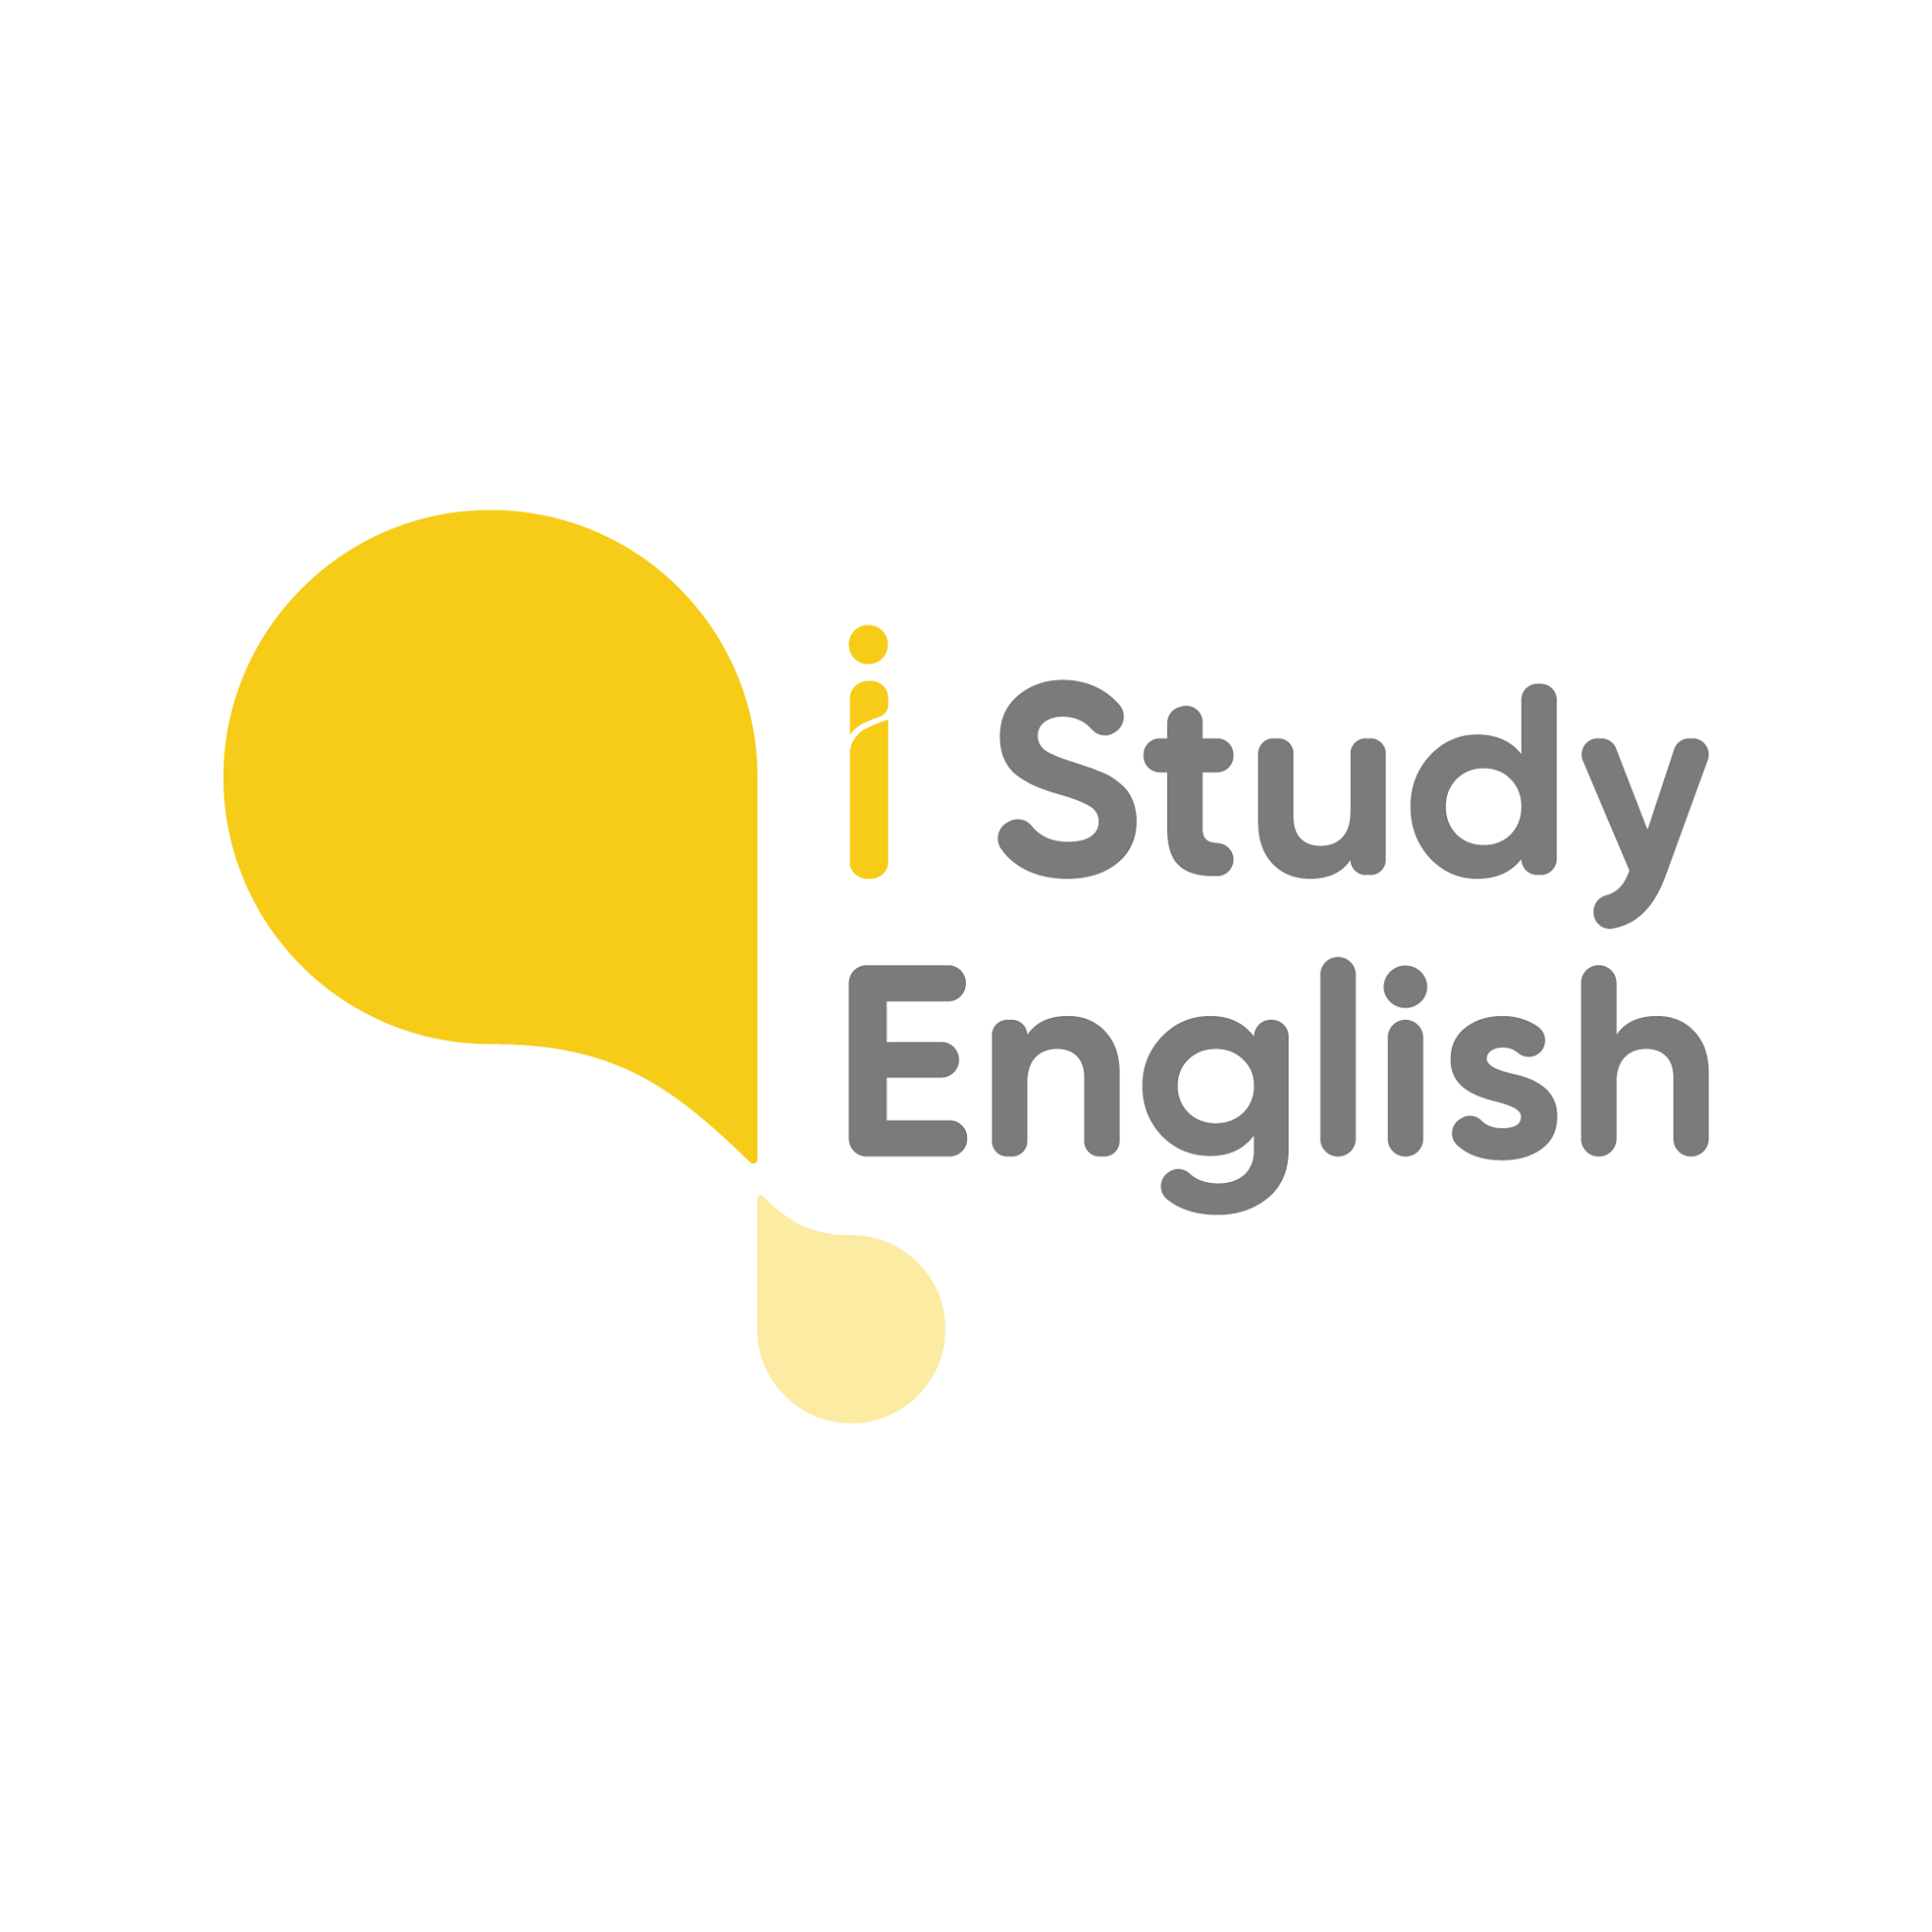 Top 8 trung tâm Anh ngữ tốt nhất tại thành phố Hồ Chí Minh -  Trung tâm Anh ngữ ISE - I Study English